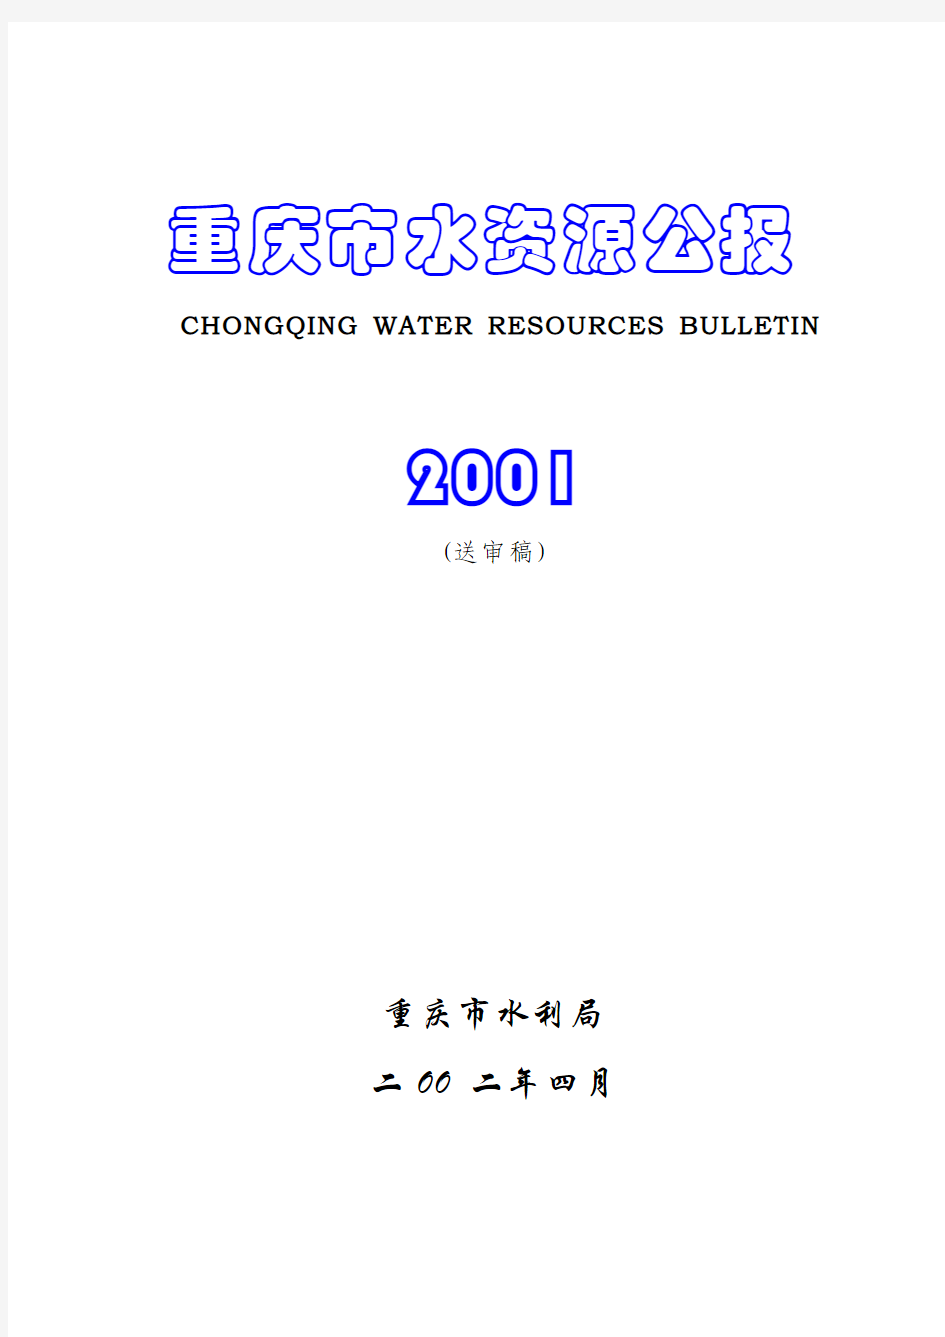 重庆市2001年水资源公报